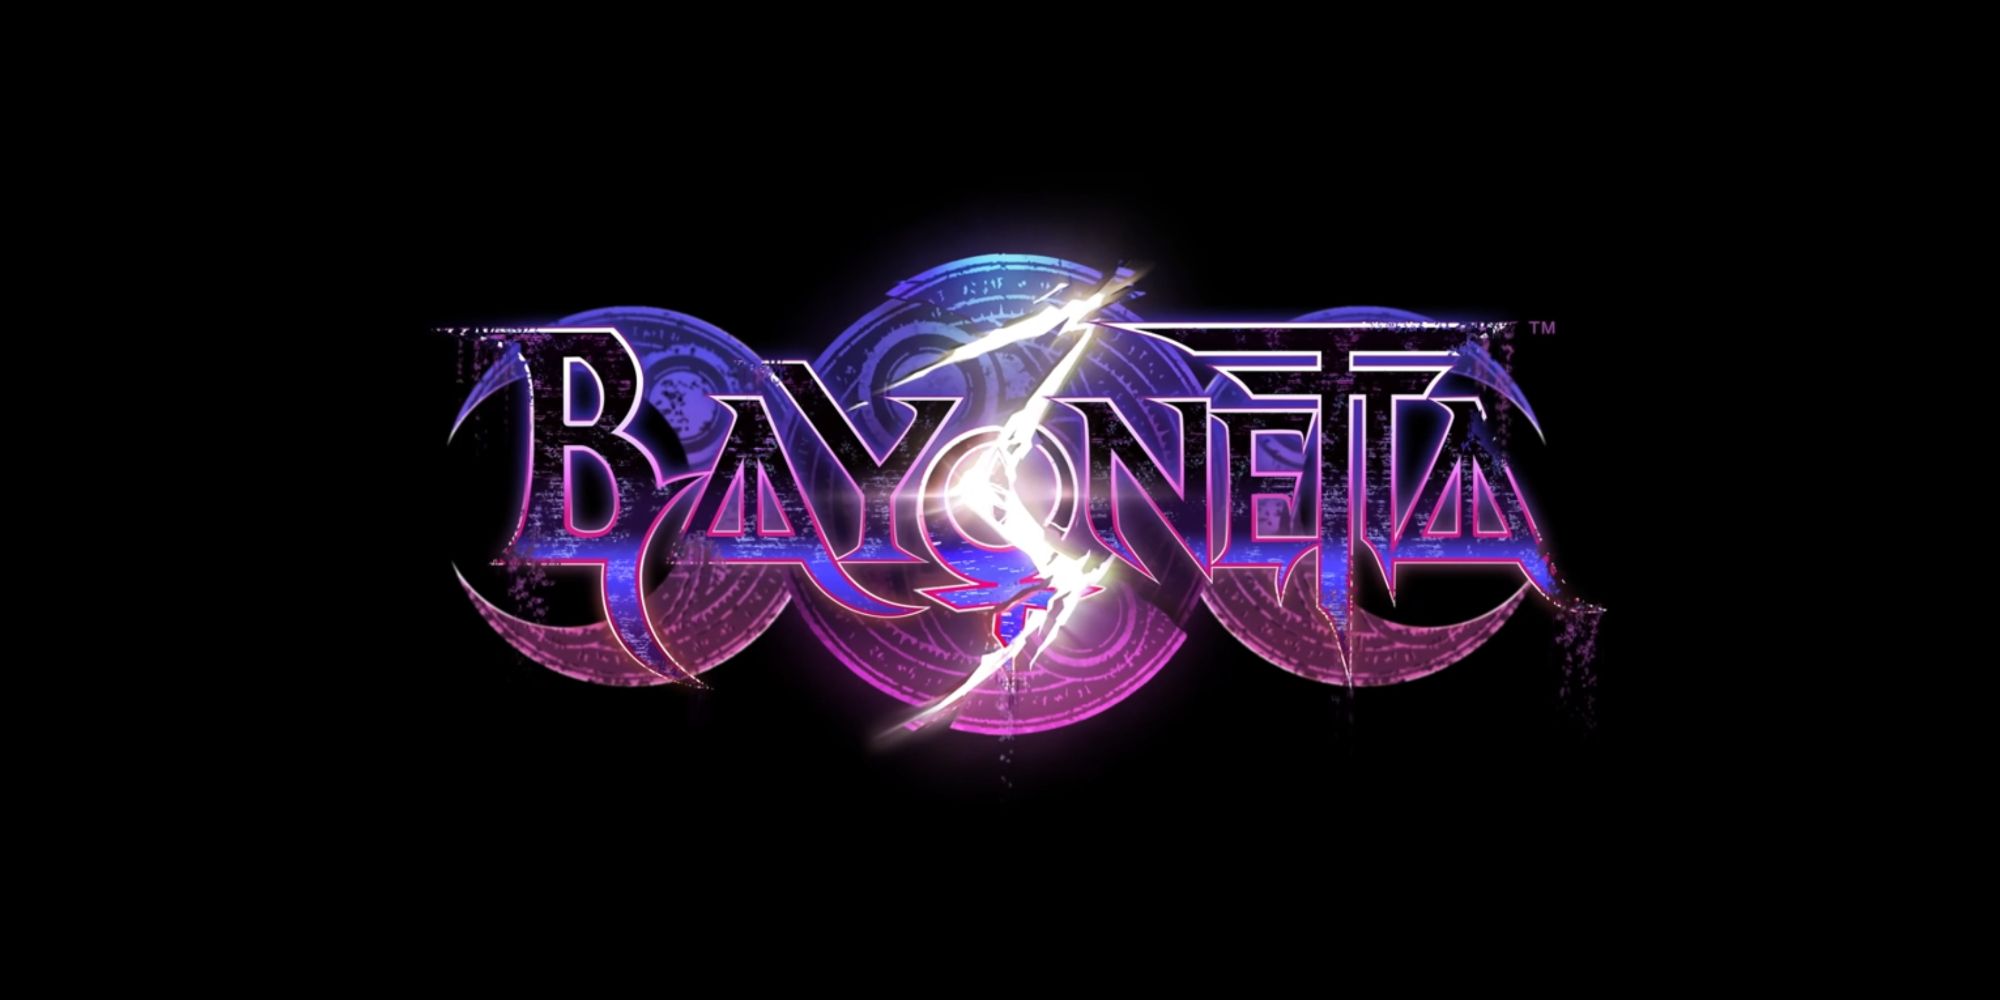 La calificación ESRB madura de Bayonetta 3 incluye compras en el juego